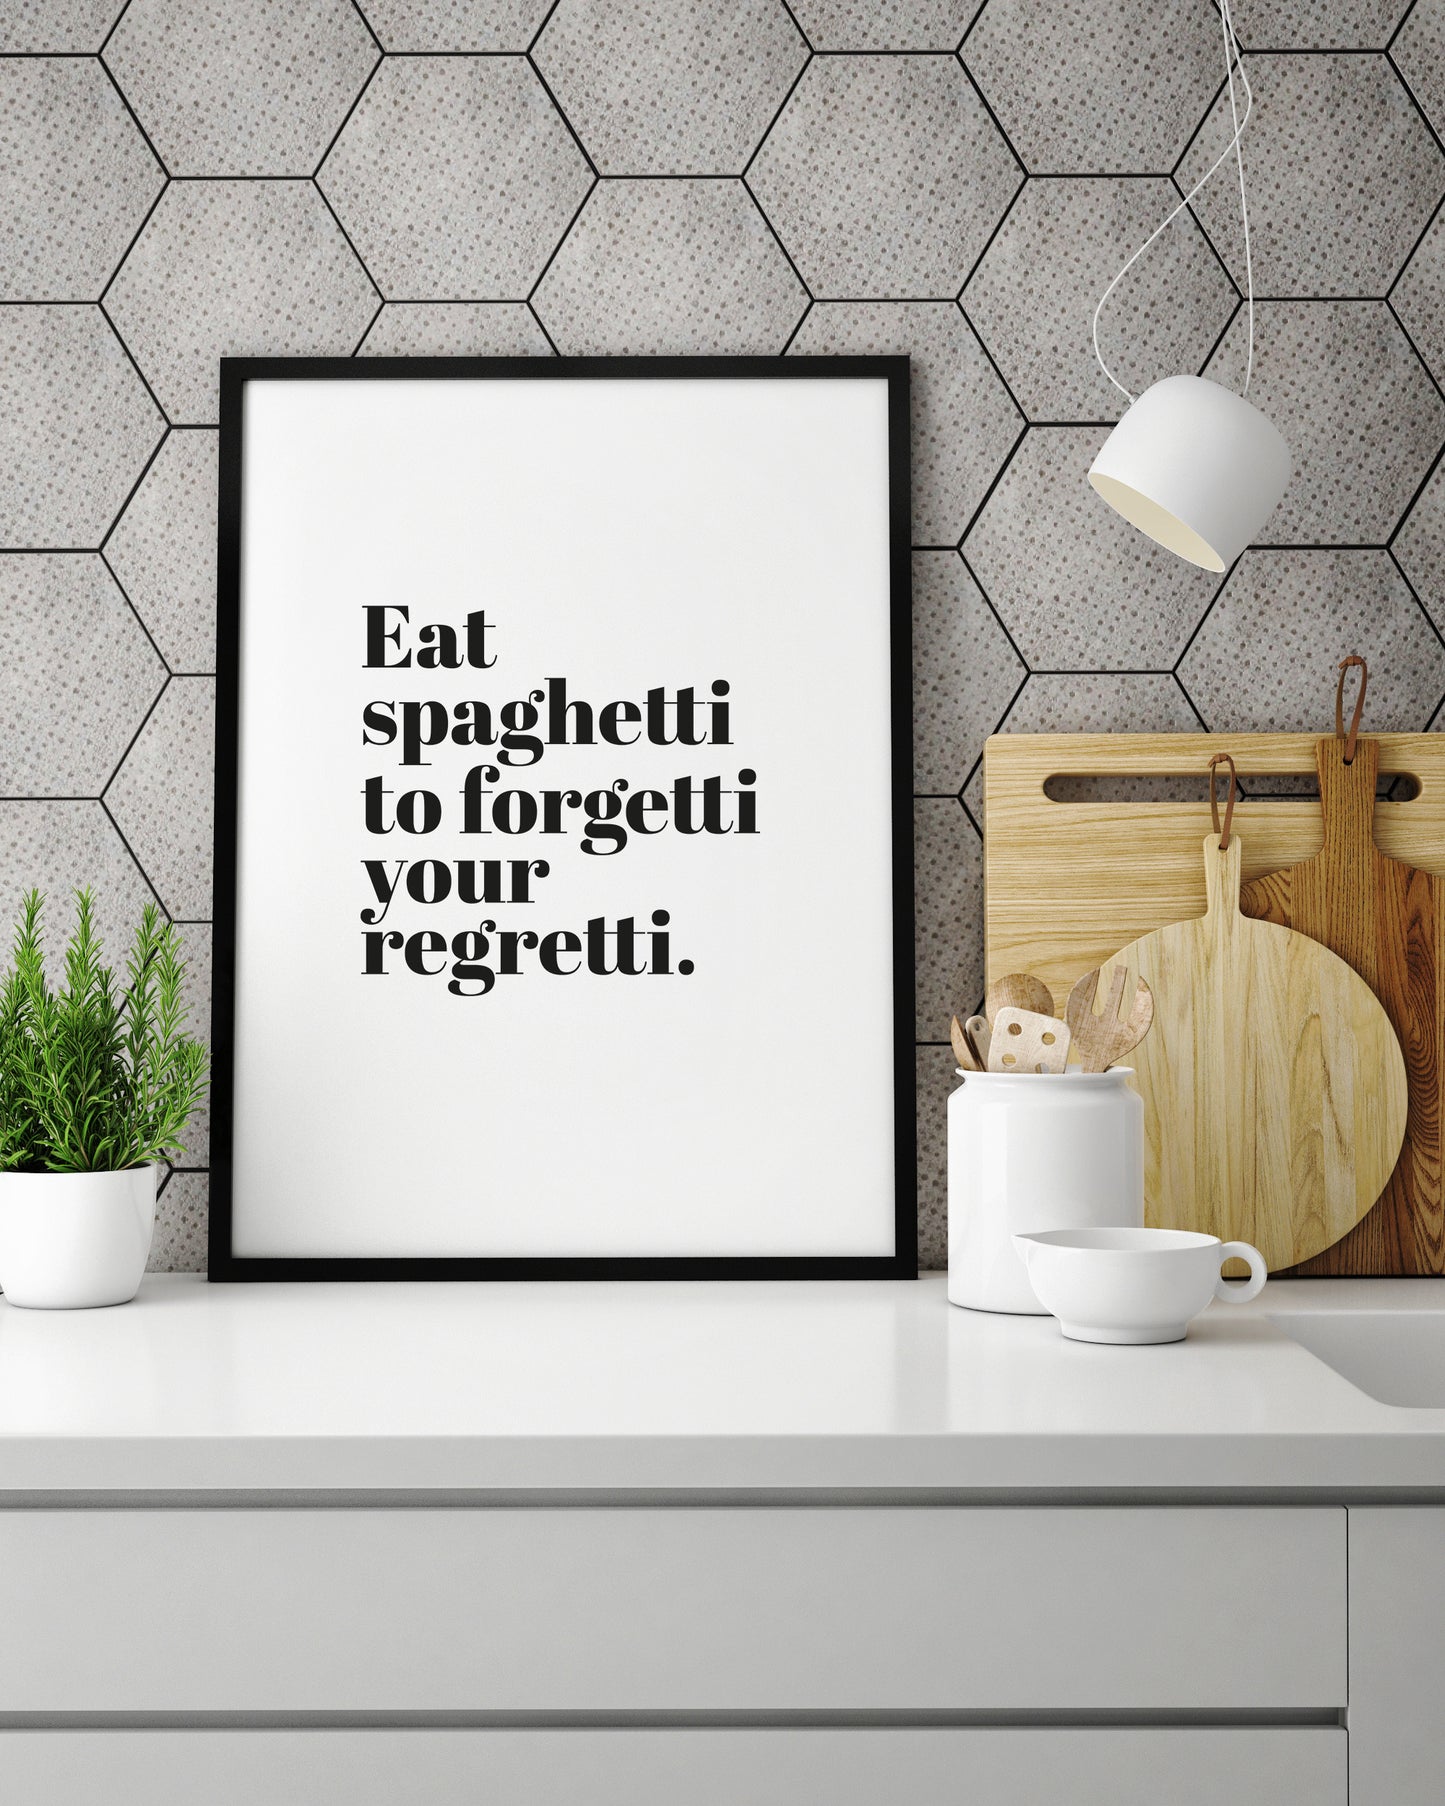 Art Print |  Eat spaghetti to forgetti your regretti